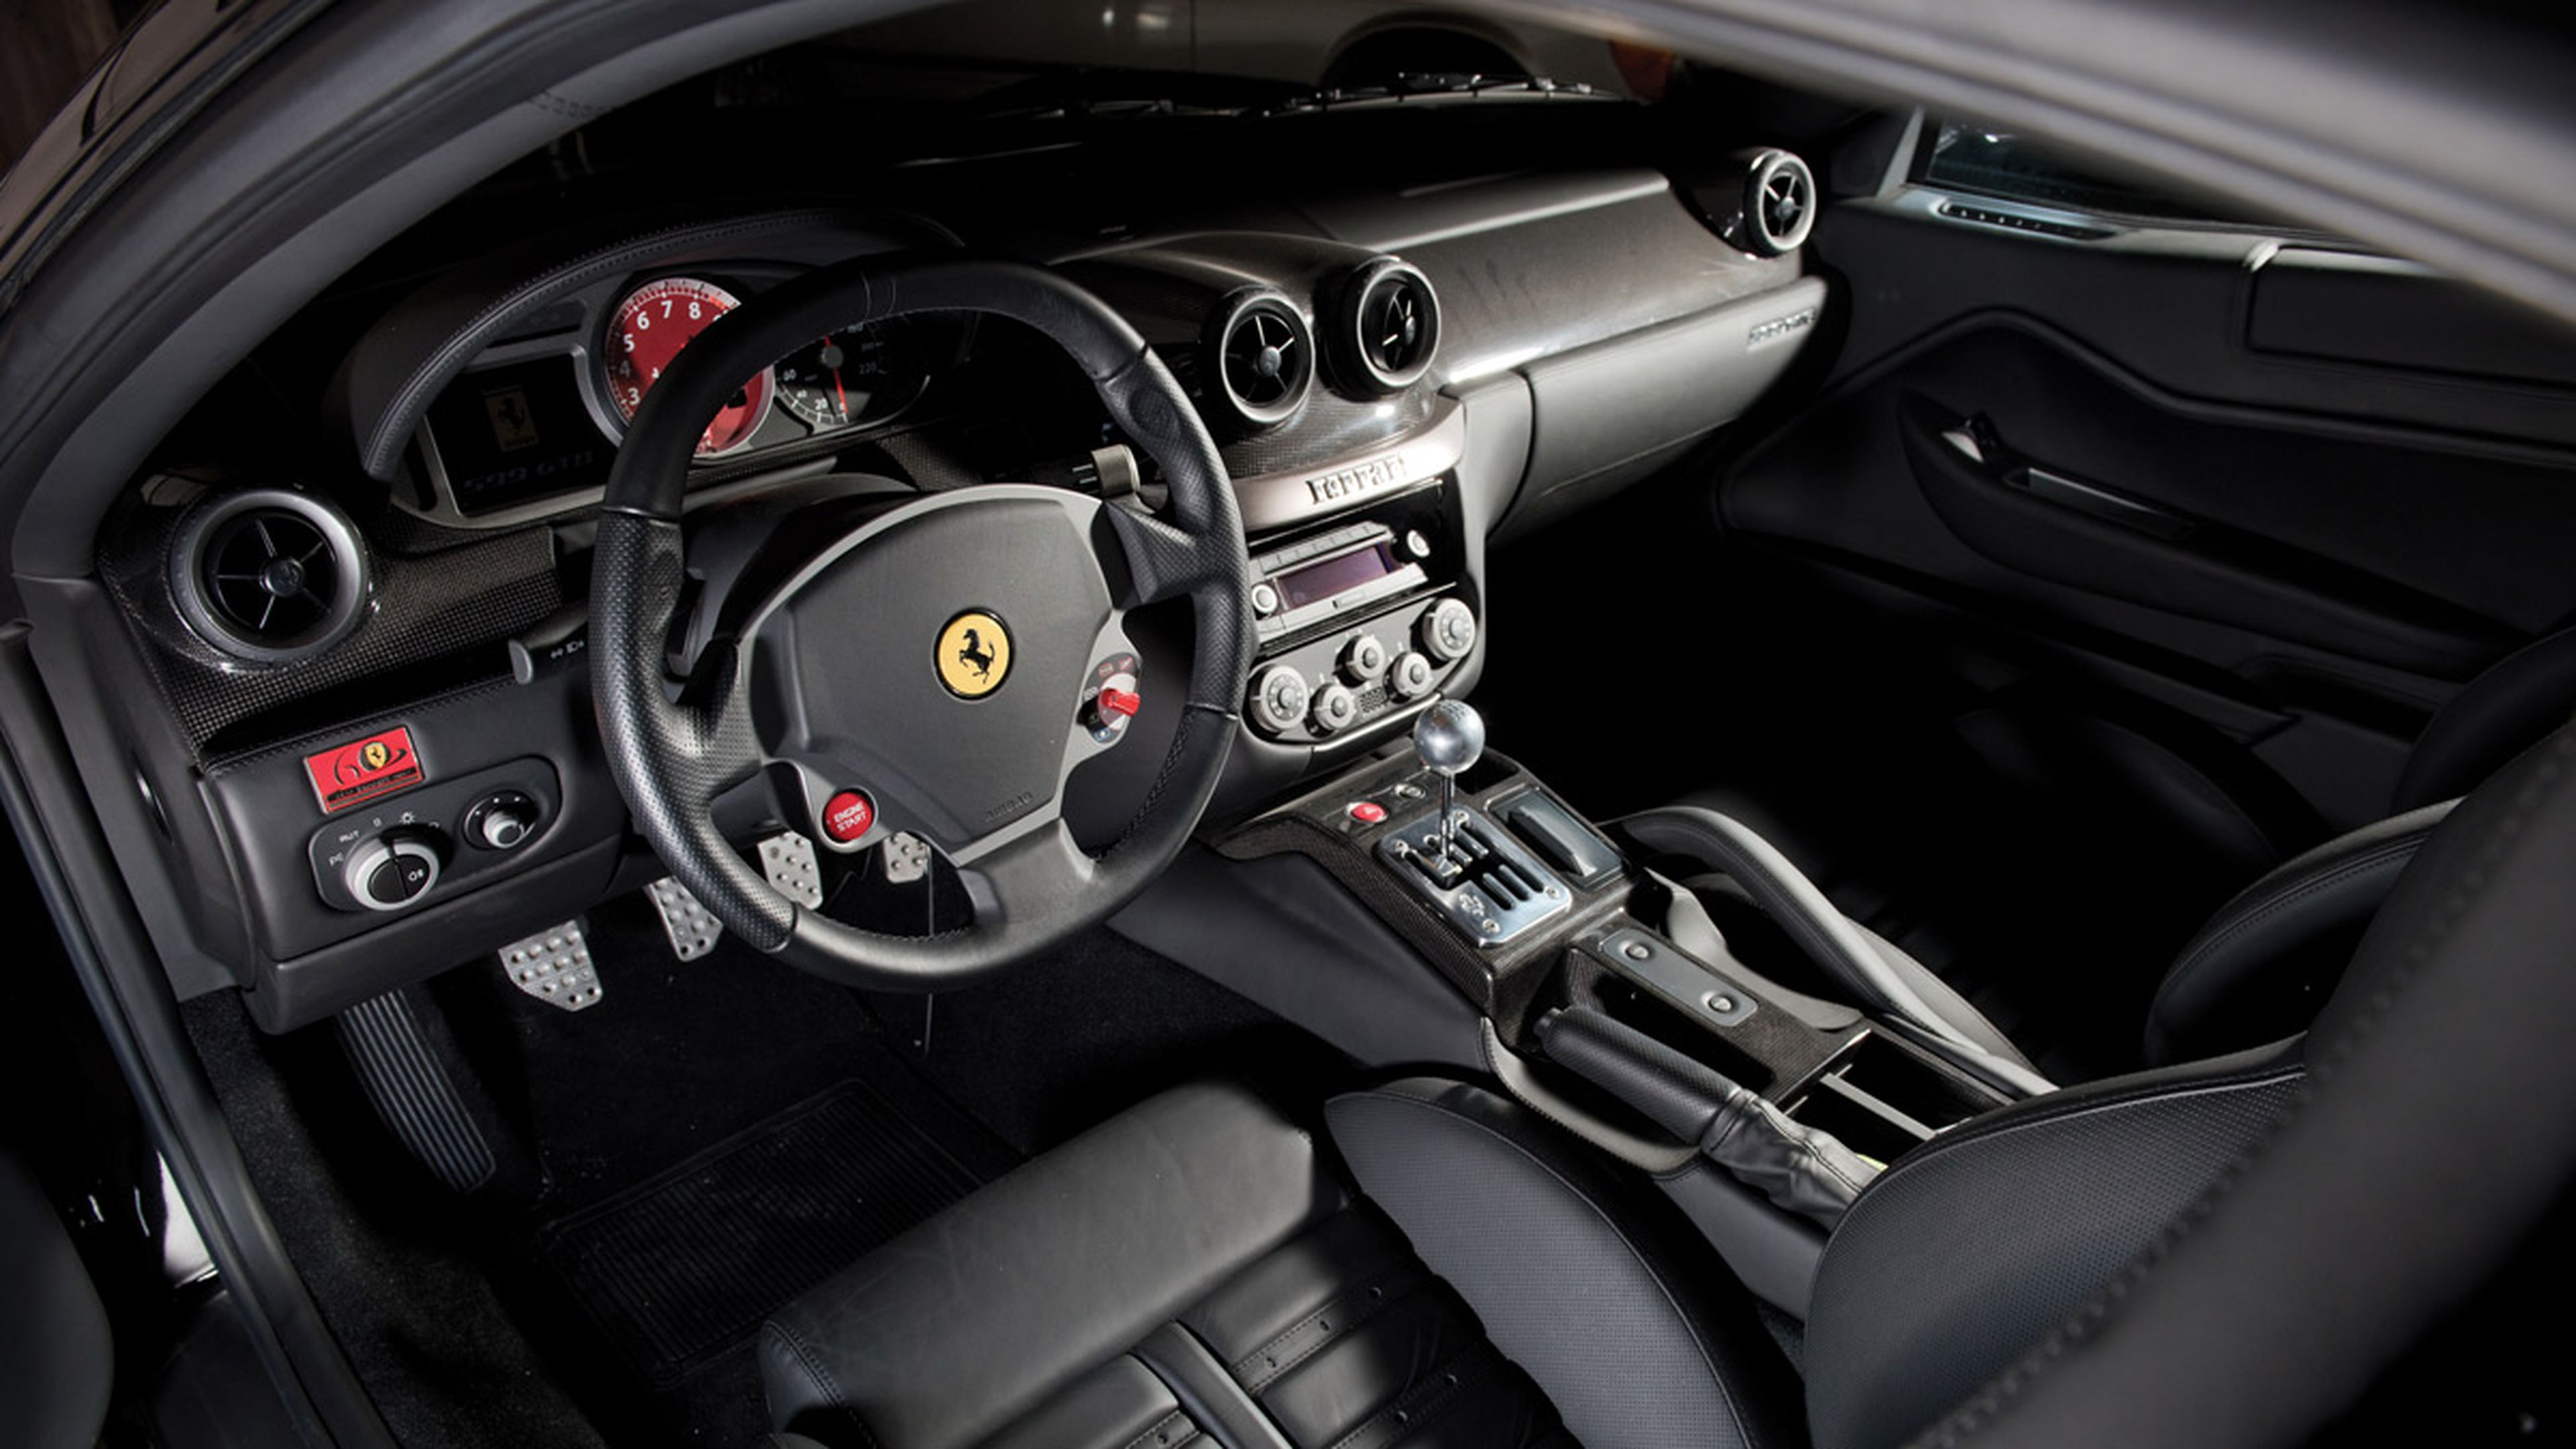 Ferrari 599 Manual interior